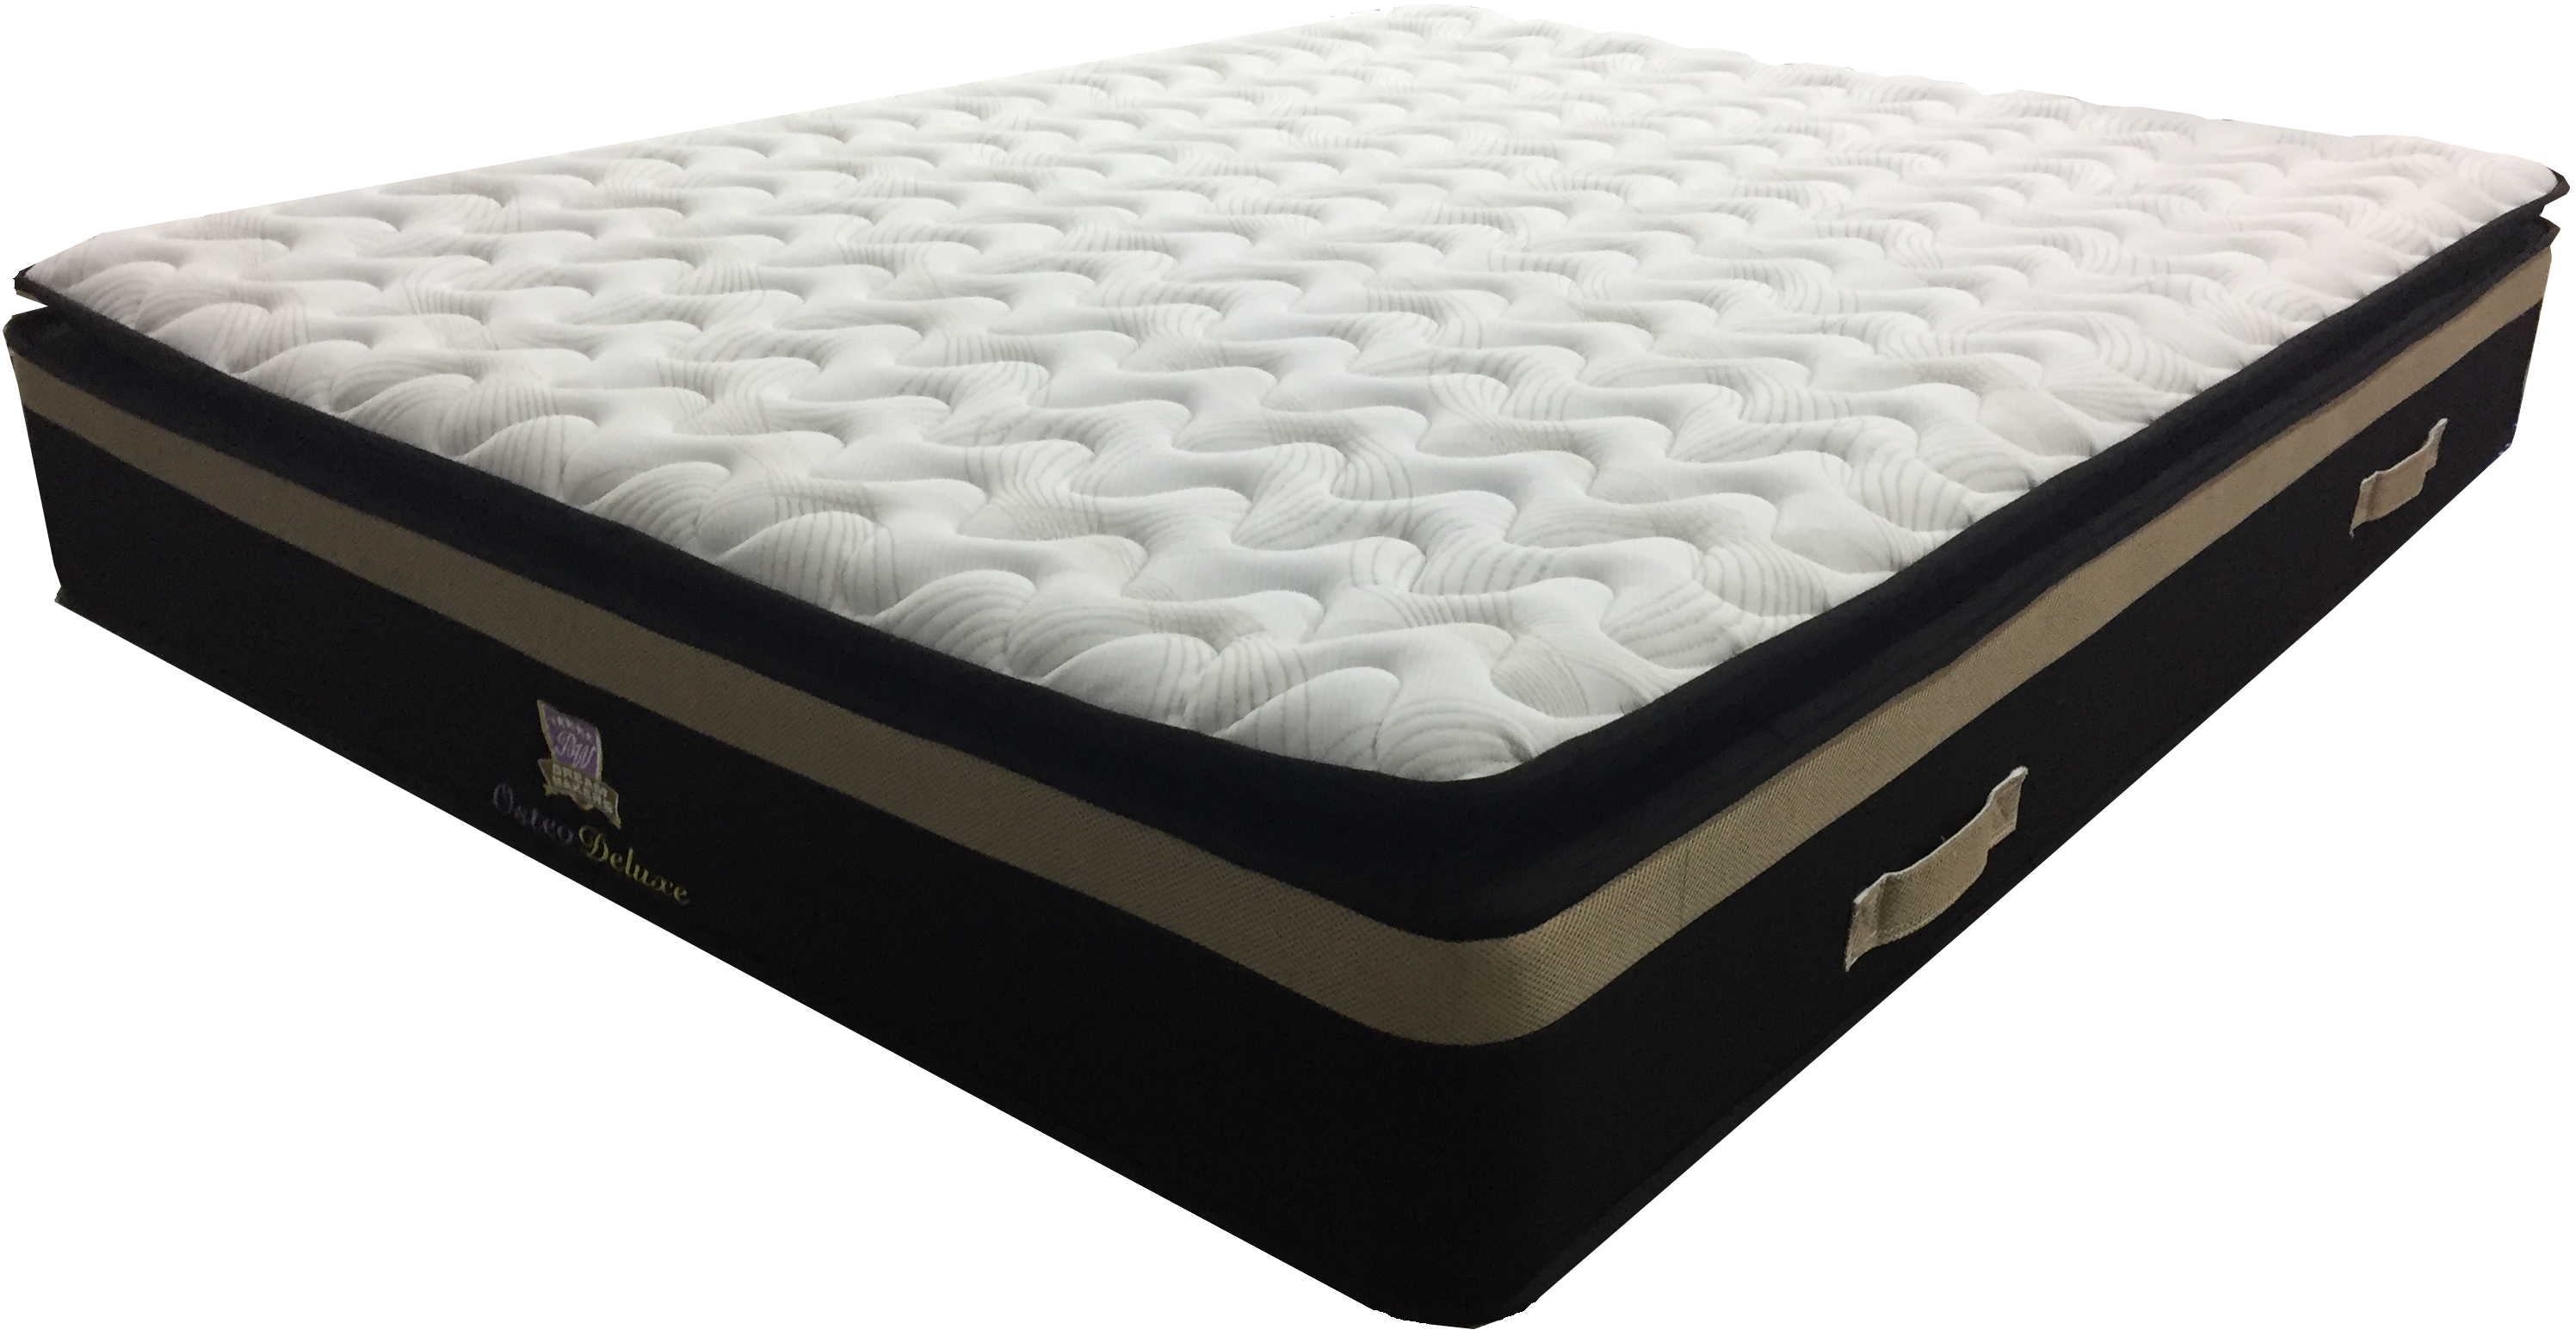 budget.mattress side sleeper